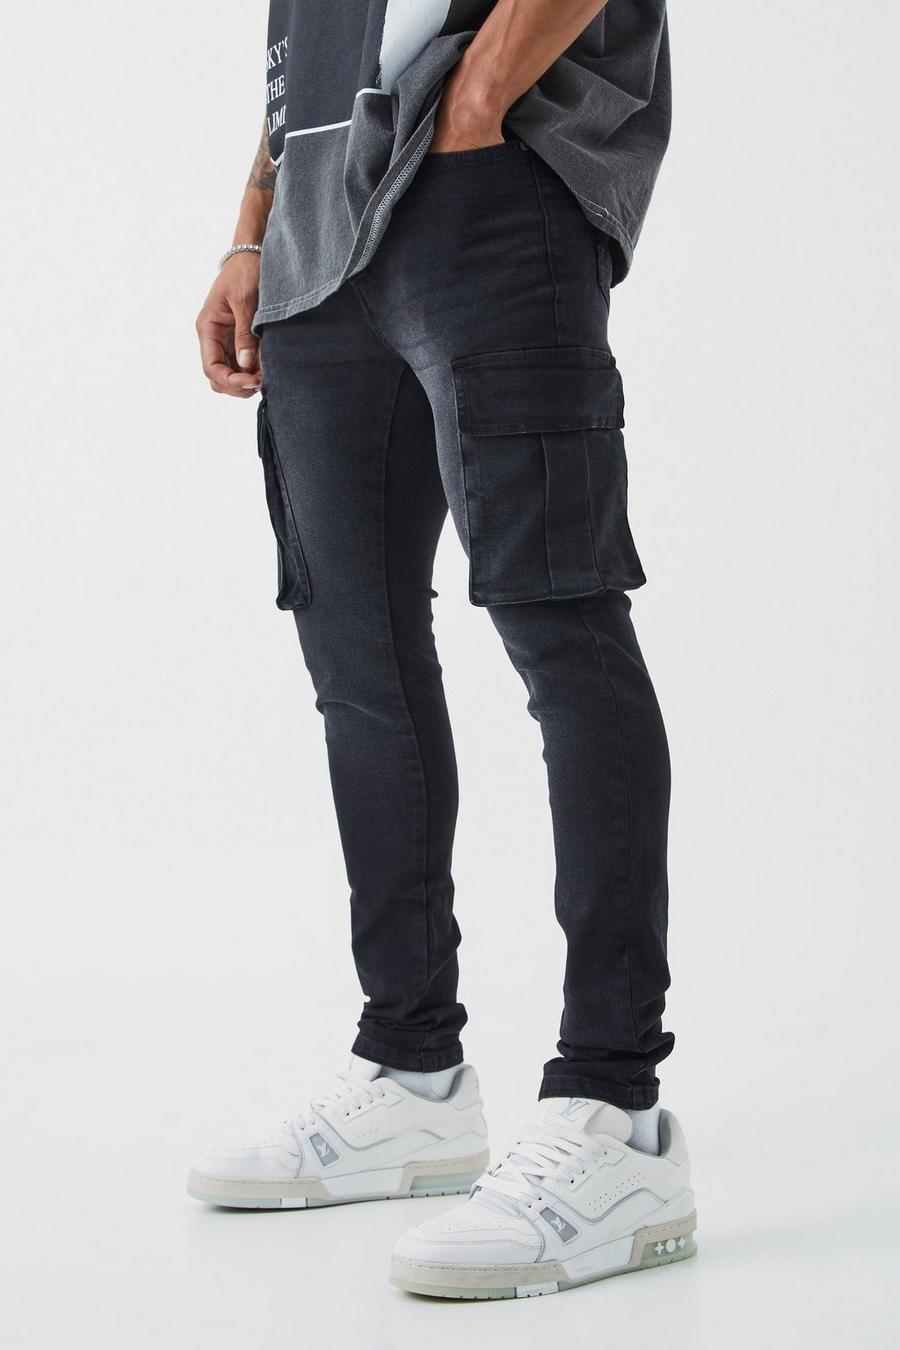 czarne spodnie jeans bojówki kieszenie